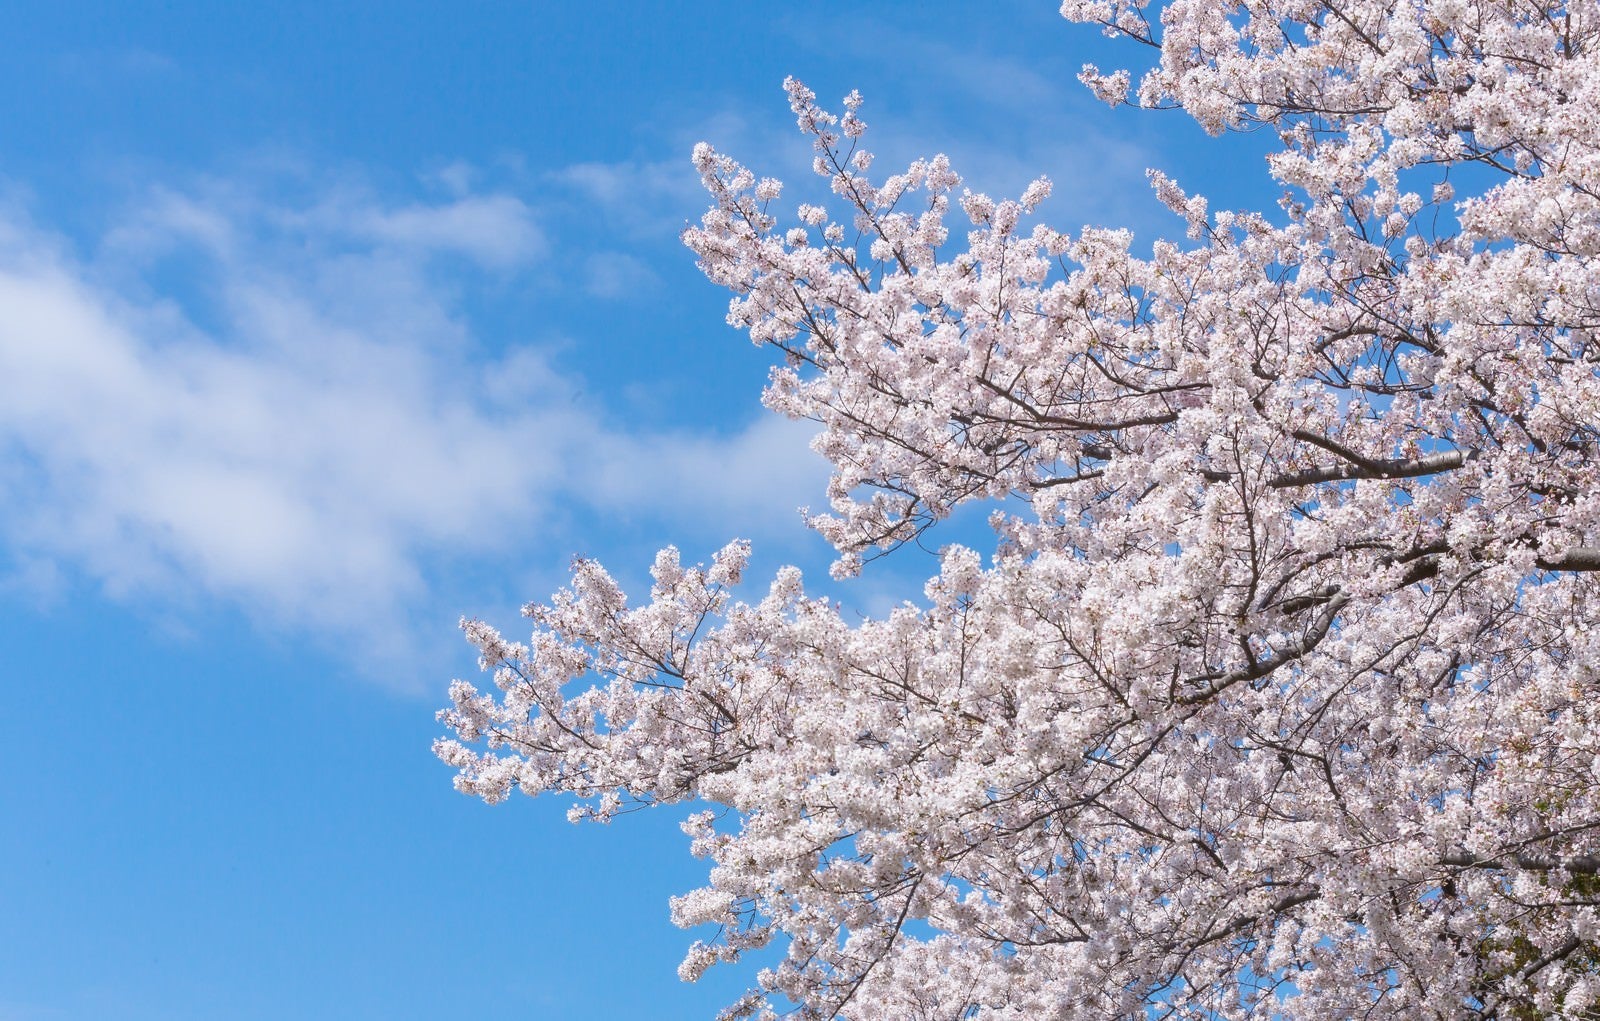 「空に伸びる桜」の写真